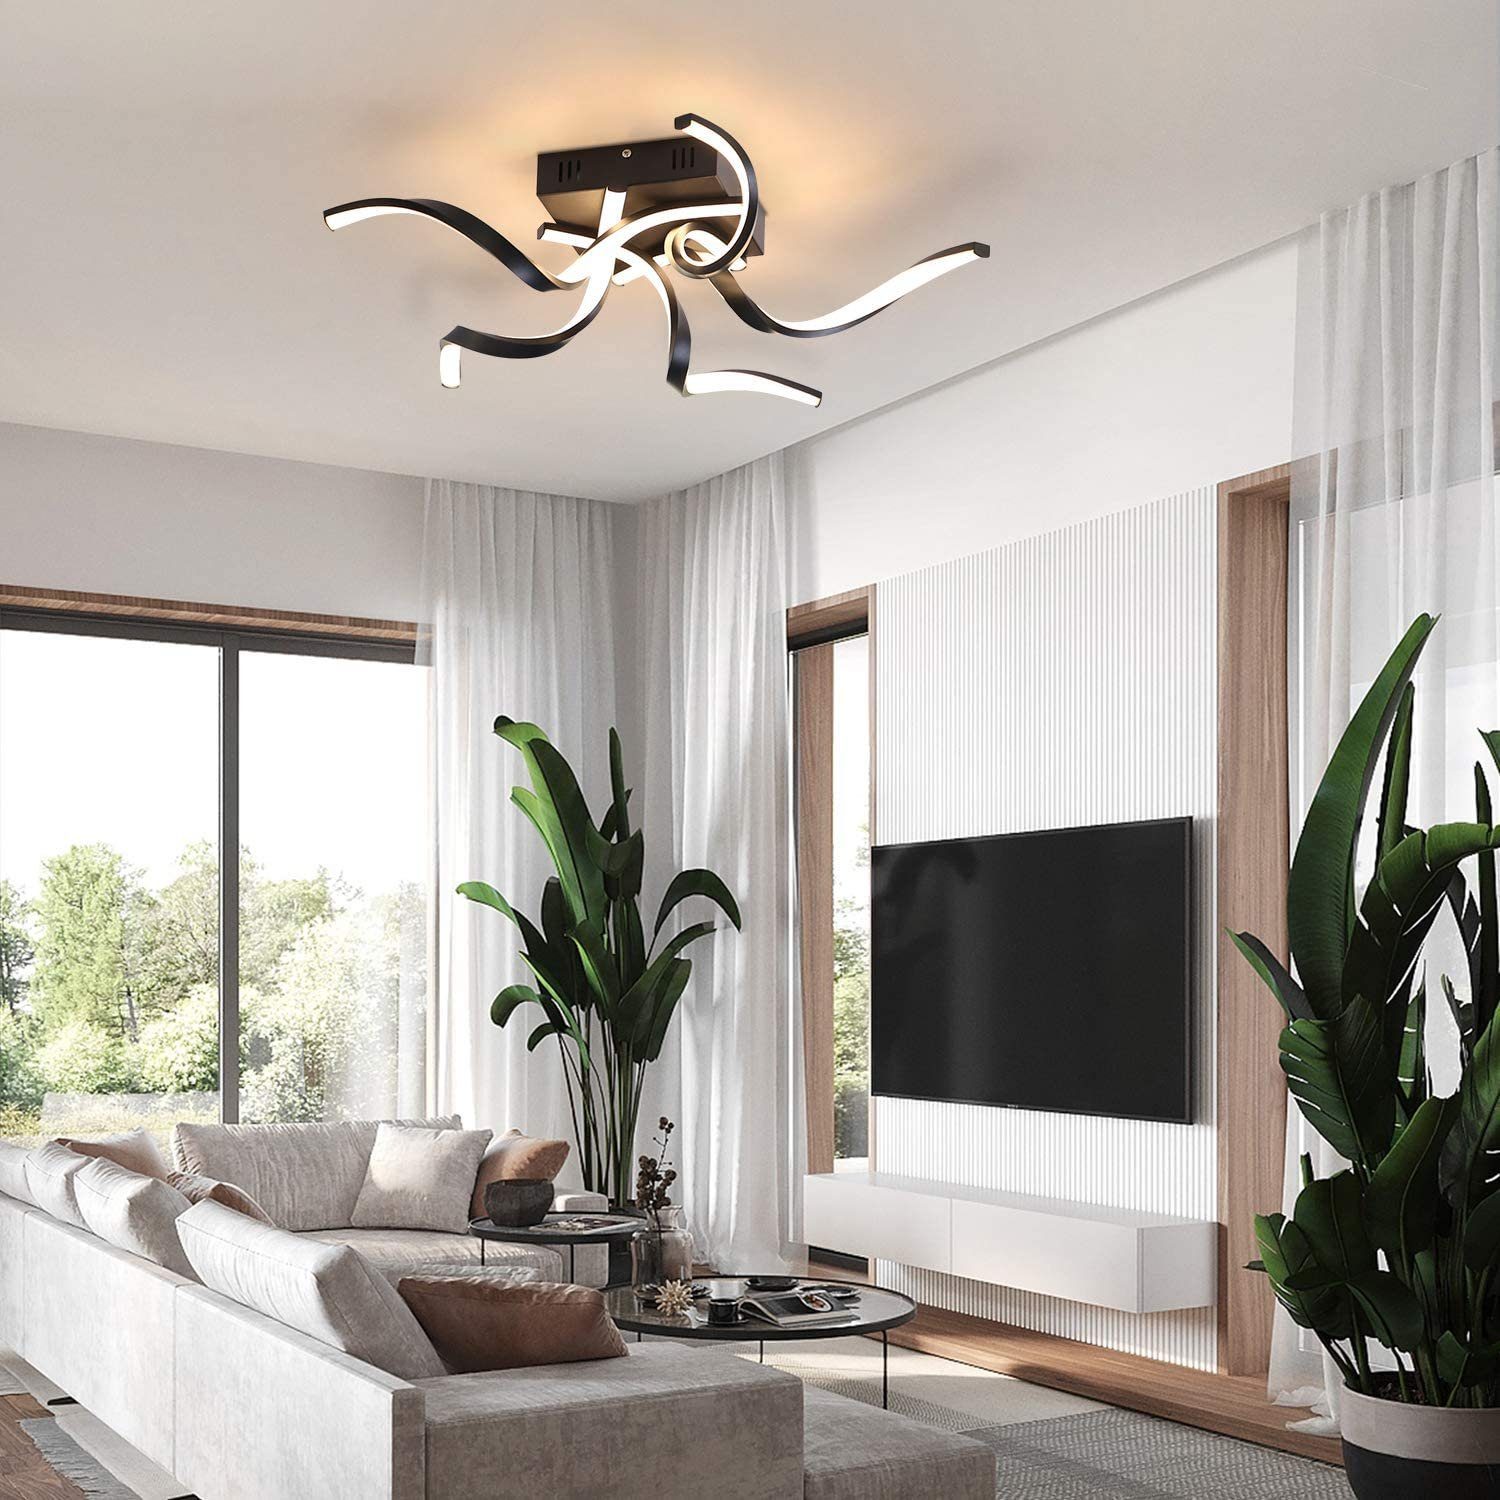 LED Design Deckenlampe Schwenkbar weiß Deckenleuchte 48W Dimmbar Flur Wohnzimmer 